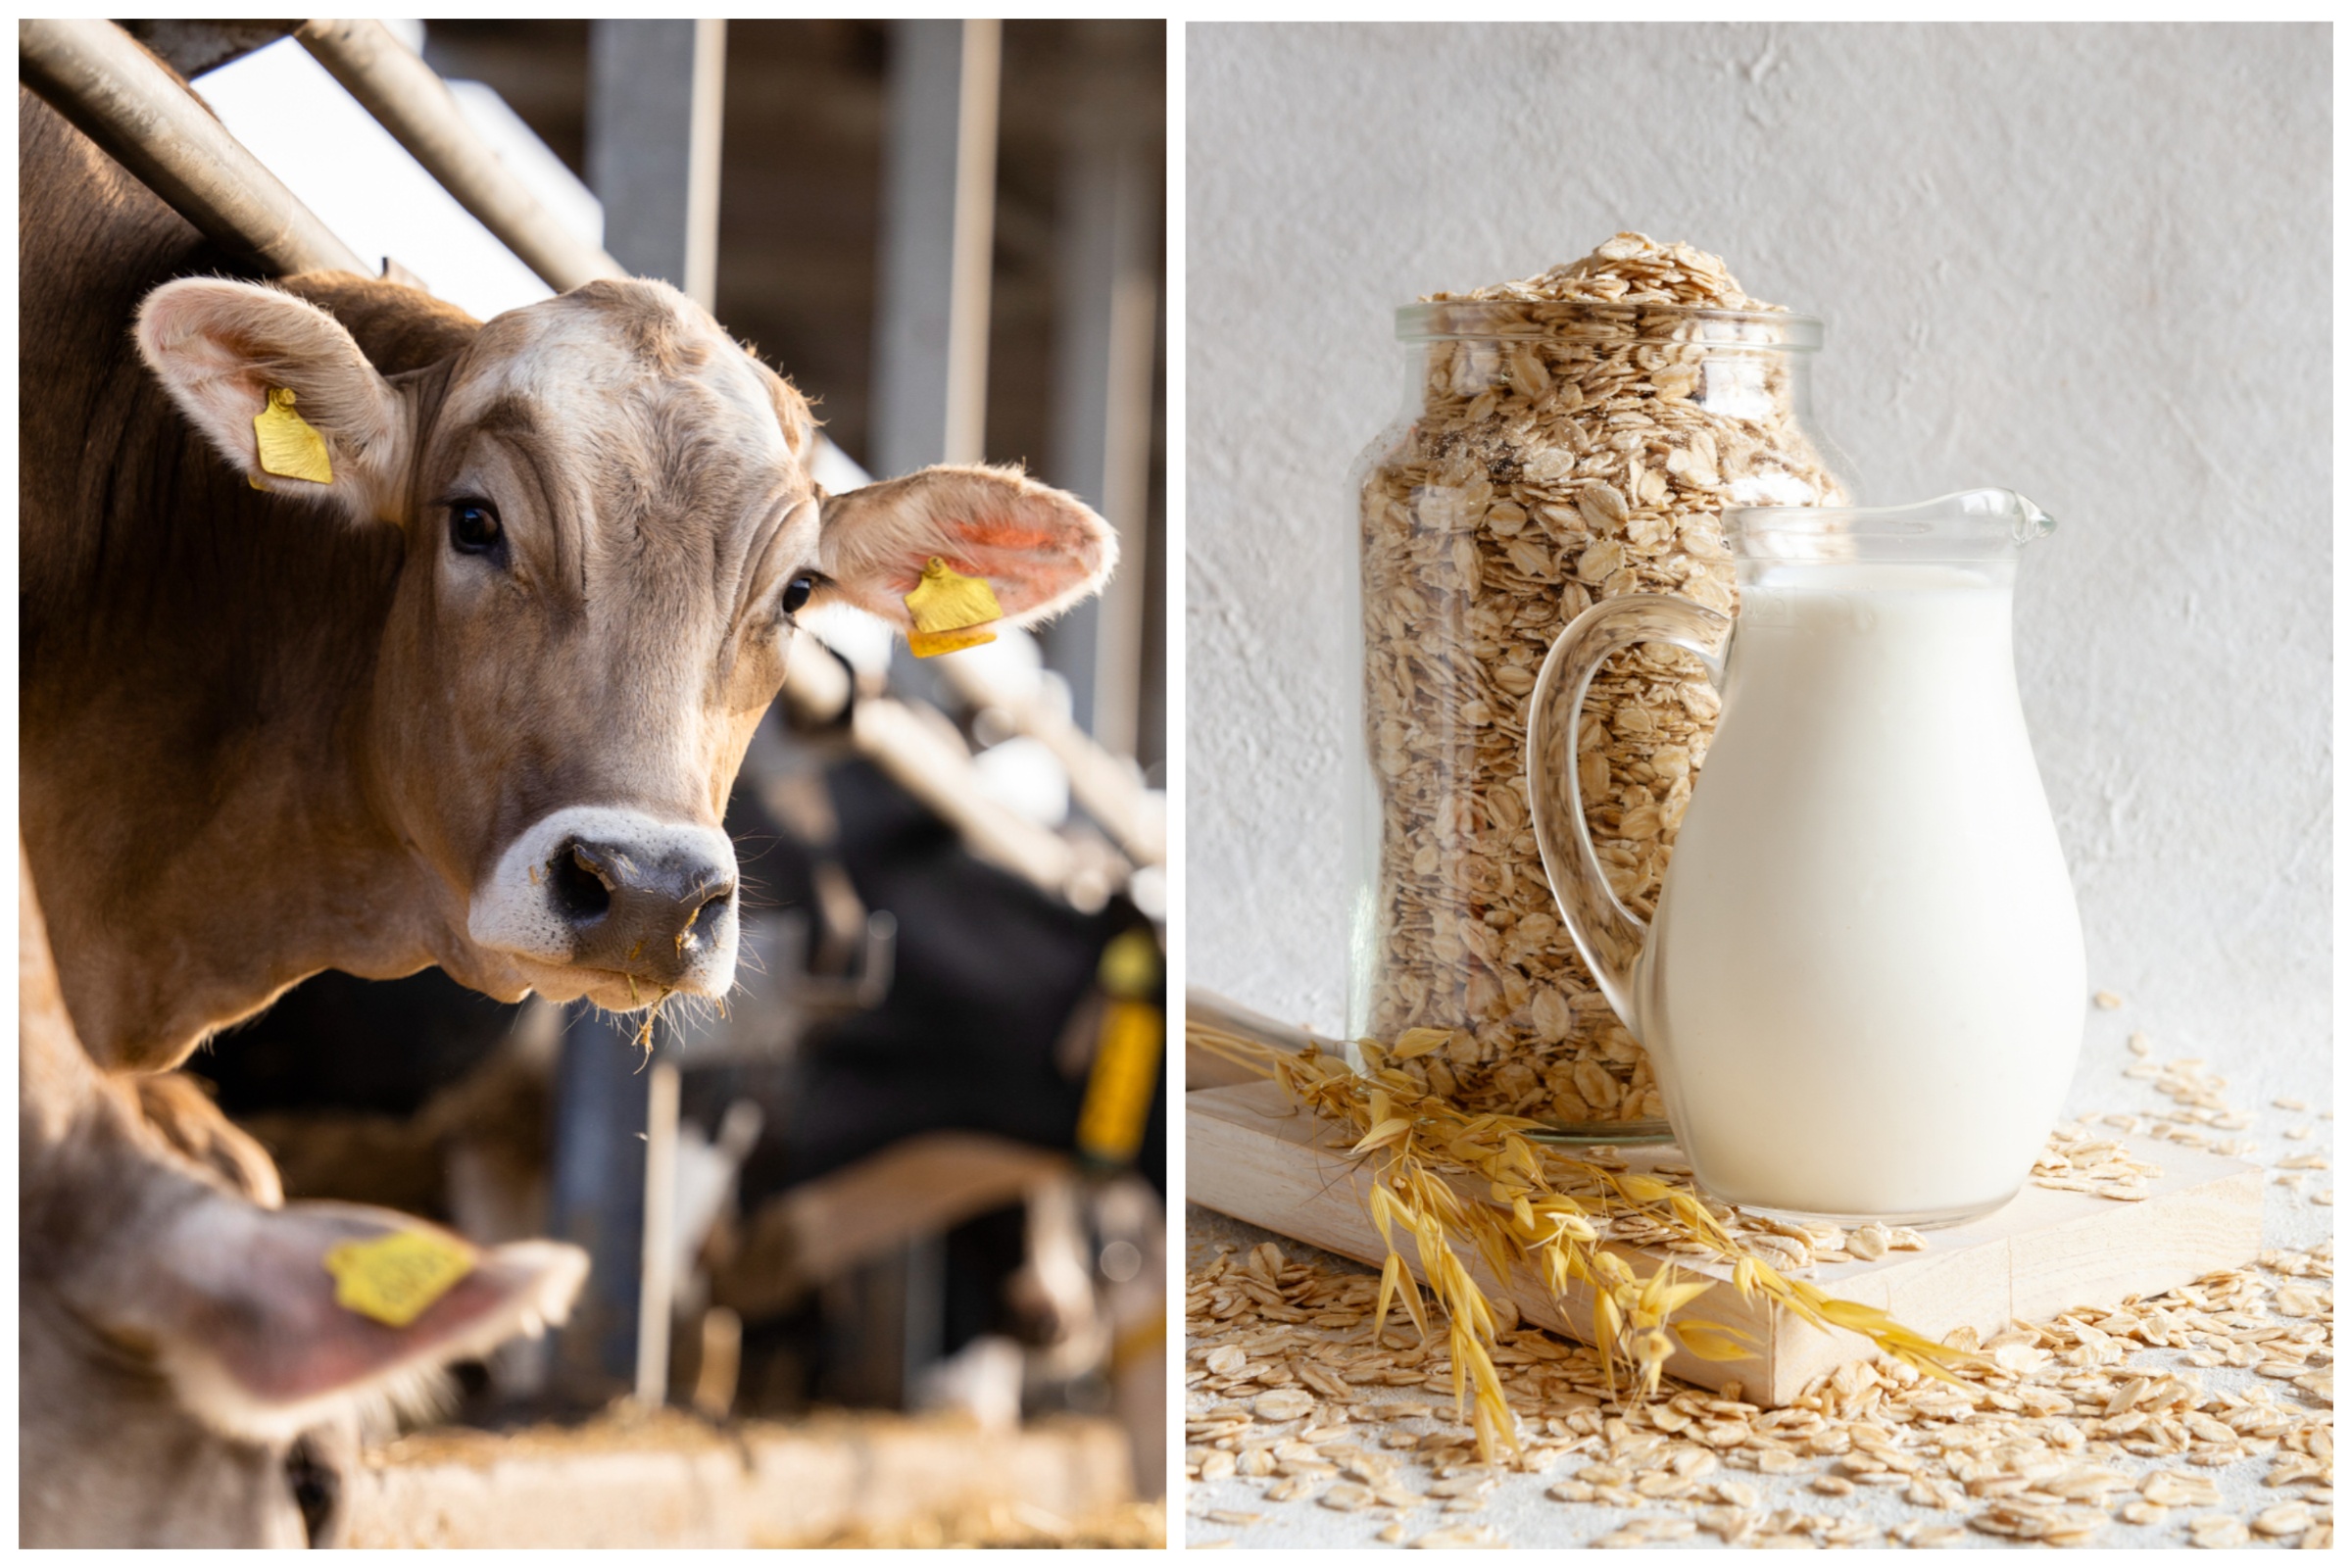 https://d.newsweek.com/en/full/2282902/cow-vs-oat-milk.jpg